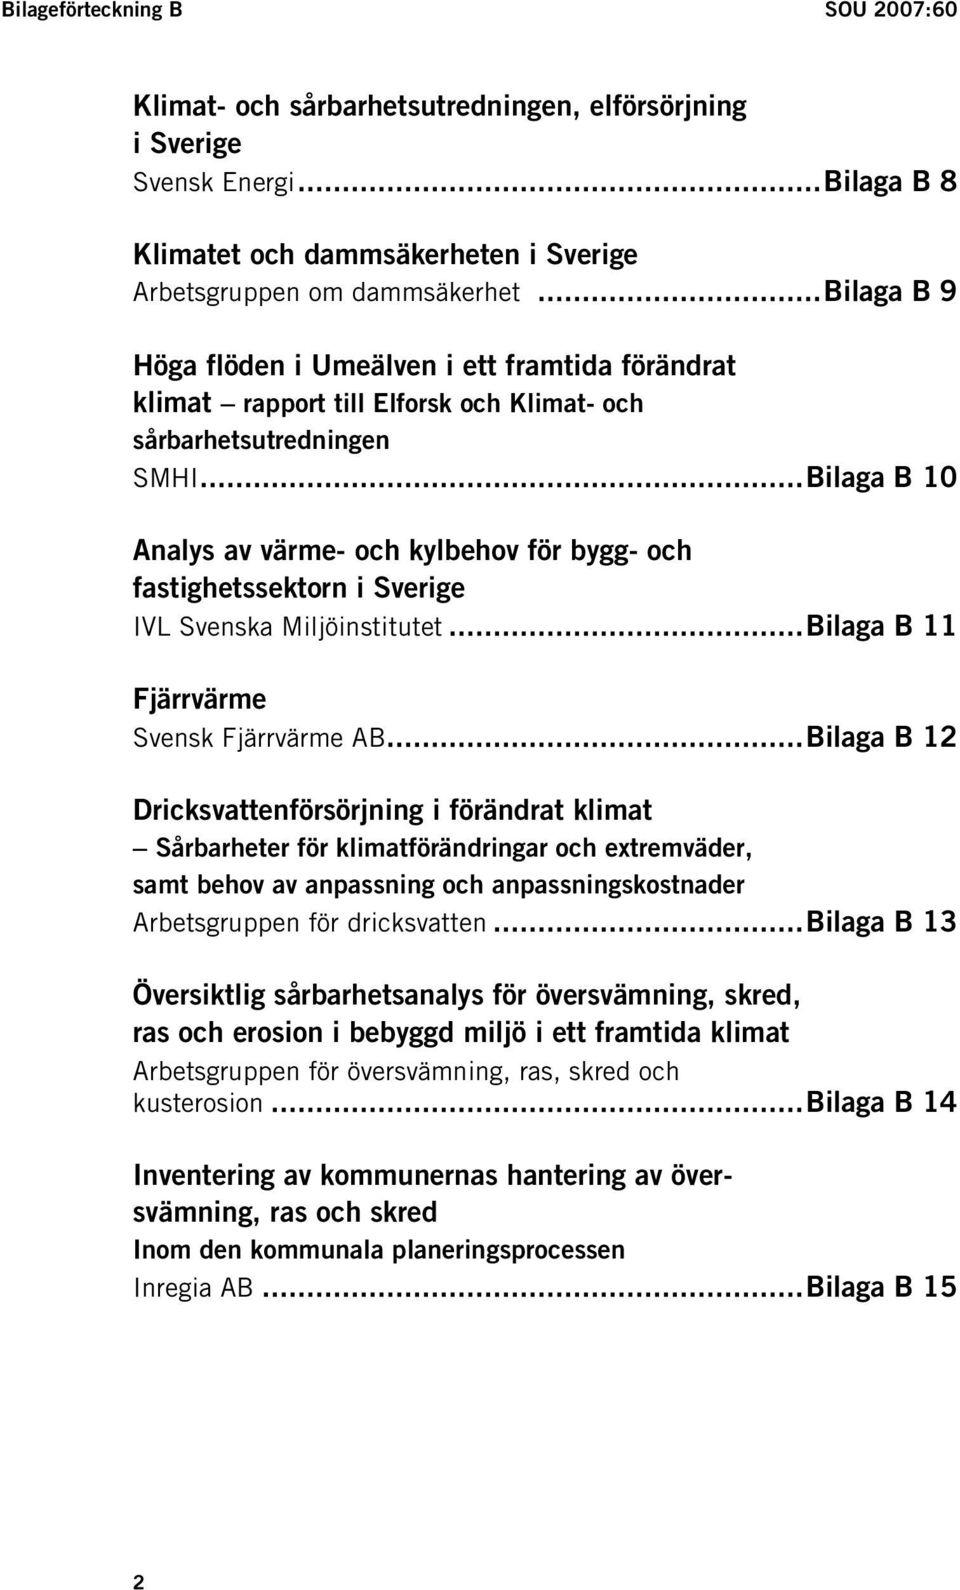 ..Bilaga B 10 Analys av värme- och kylbehov för bygg- och fastighetssektorn i Sverige IVL Svenska Miljöinstitutet...Bilaga B 11 Fjärrvärme Svensk Fjärrvärme AB.